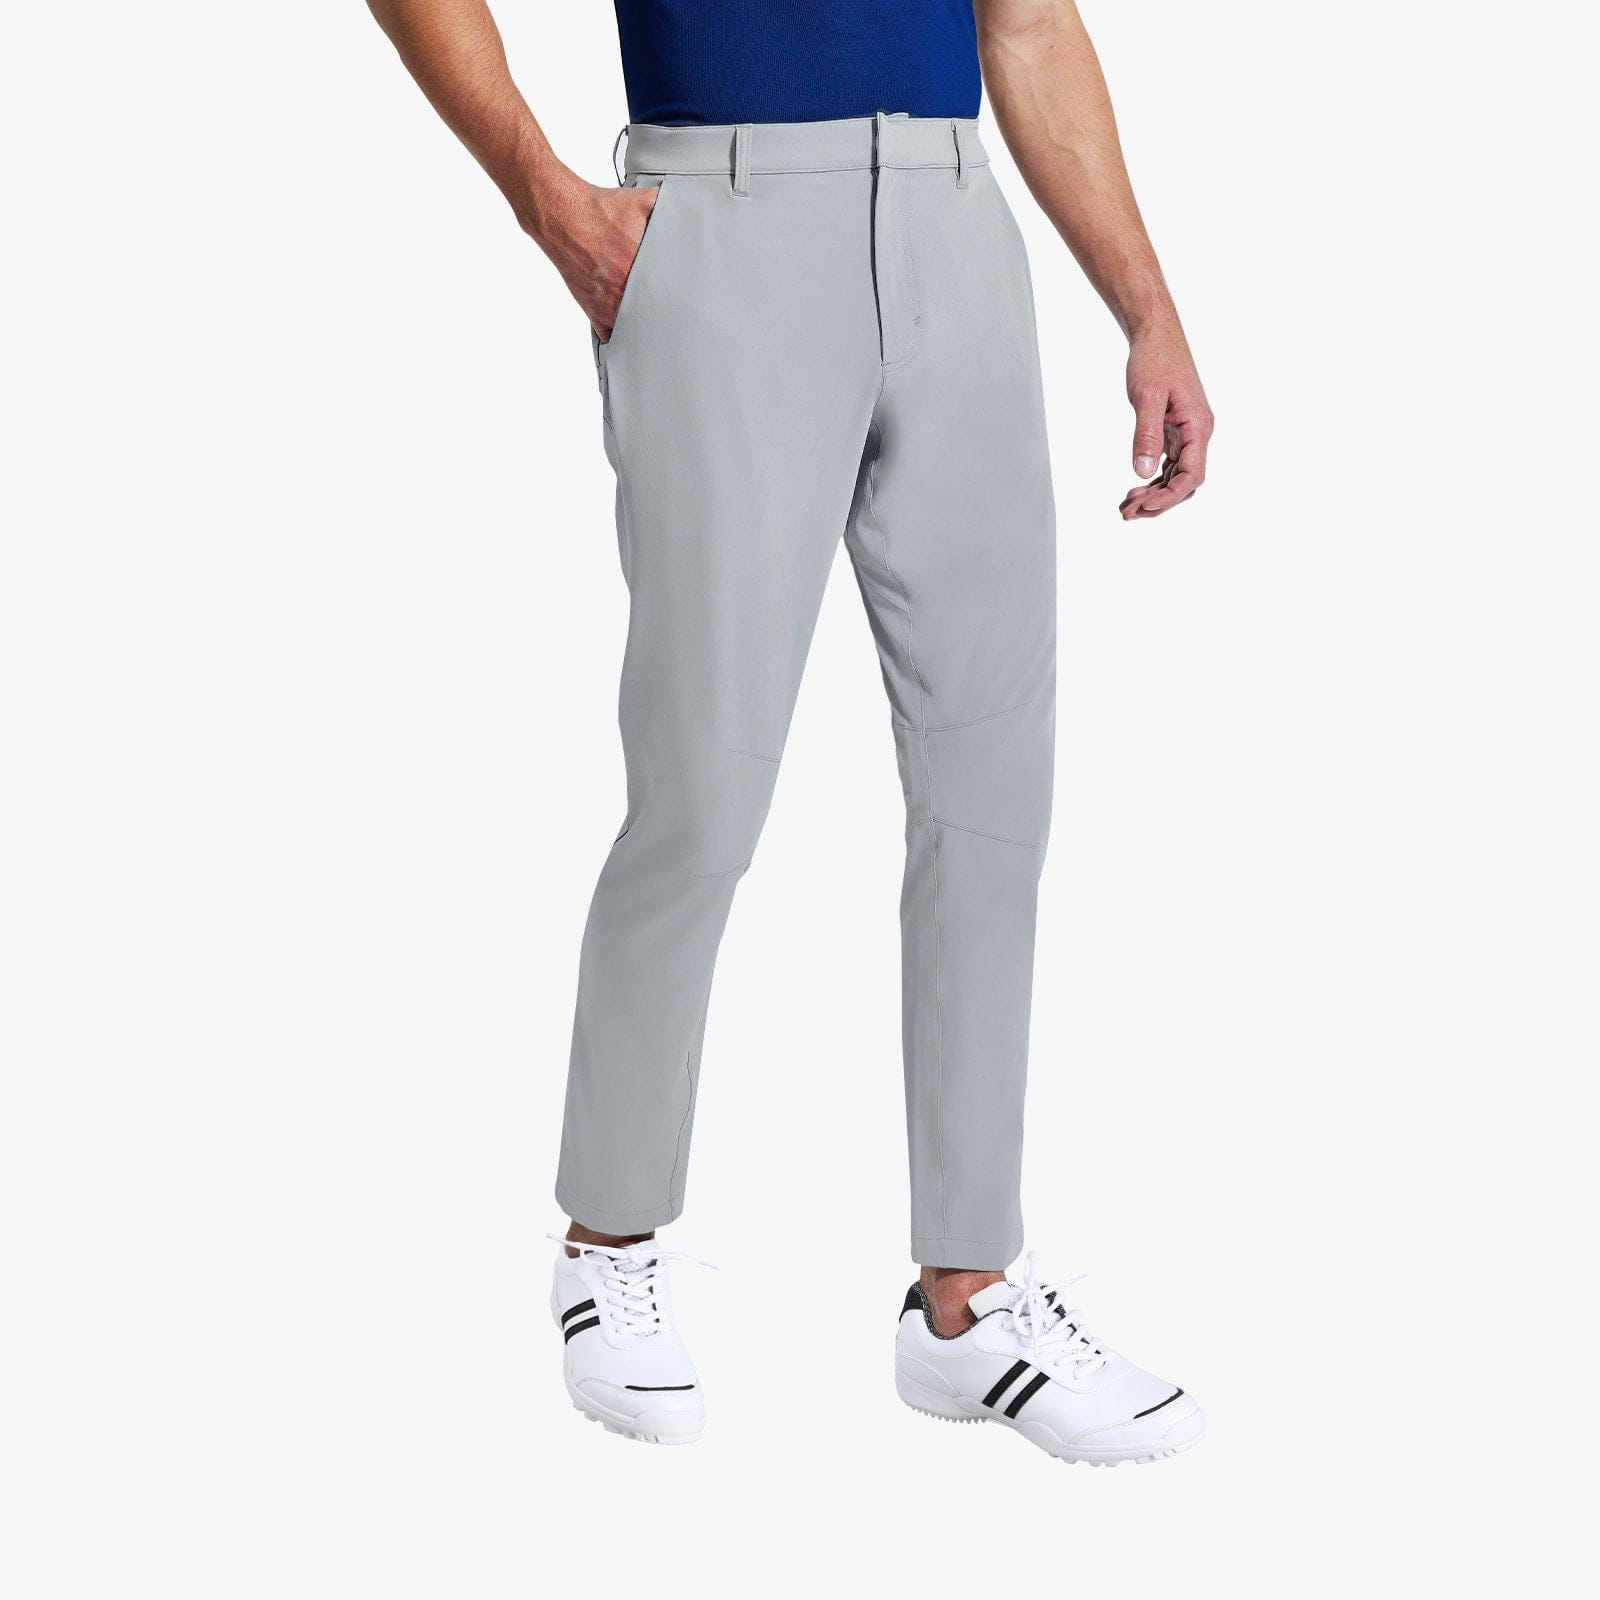 Men's Stretch Golf Pants Slim Fit Quick Dry Pants Men Train Pants Light Grey / S MIER